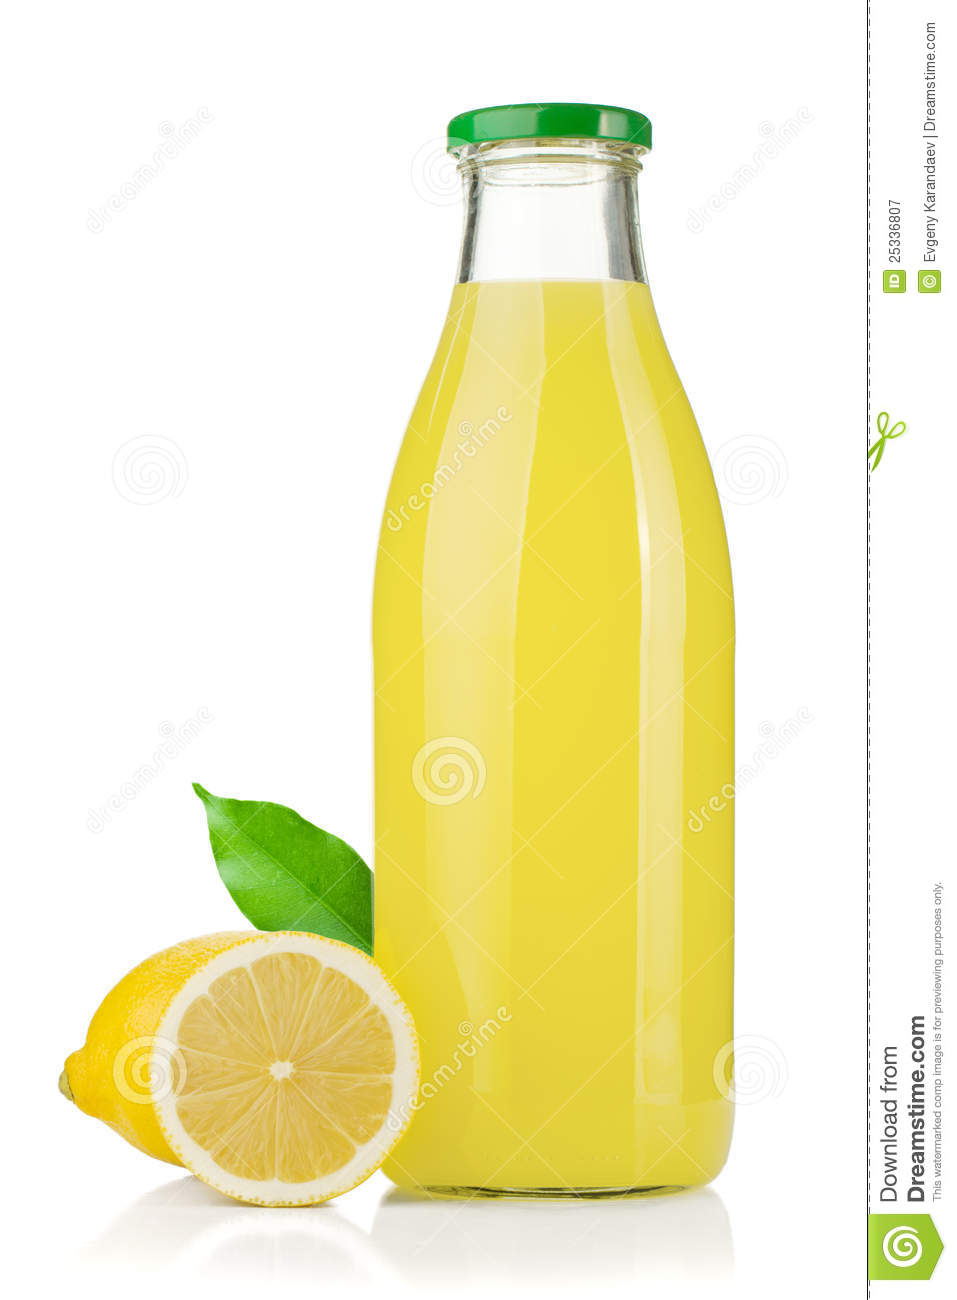 Bottle Of Lemon Juice And Fresh Lemons Royalty Free Stock Photography    